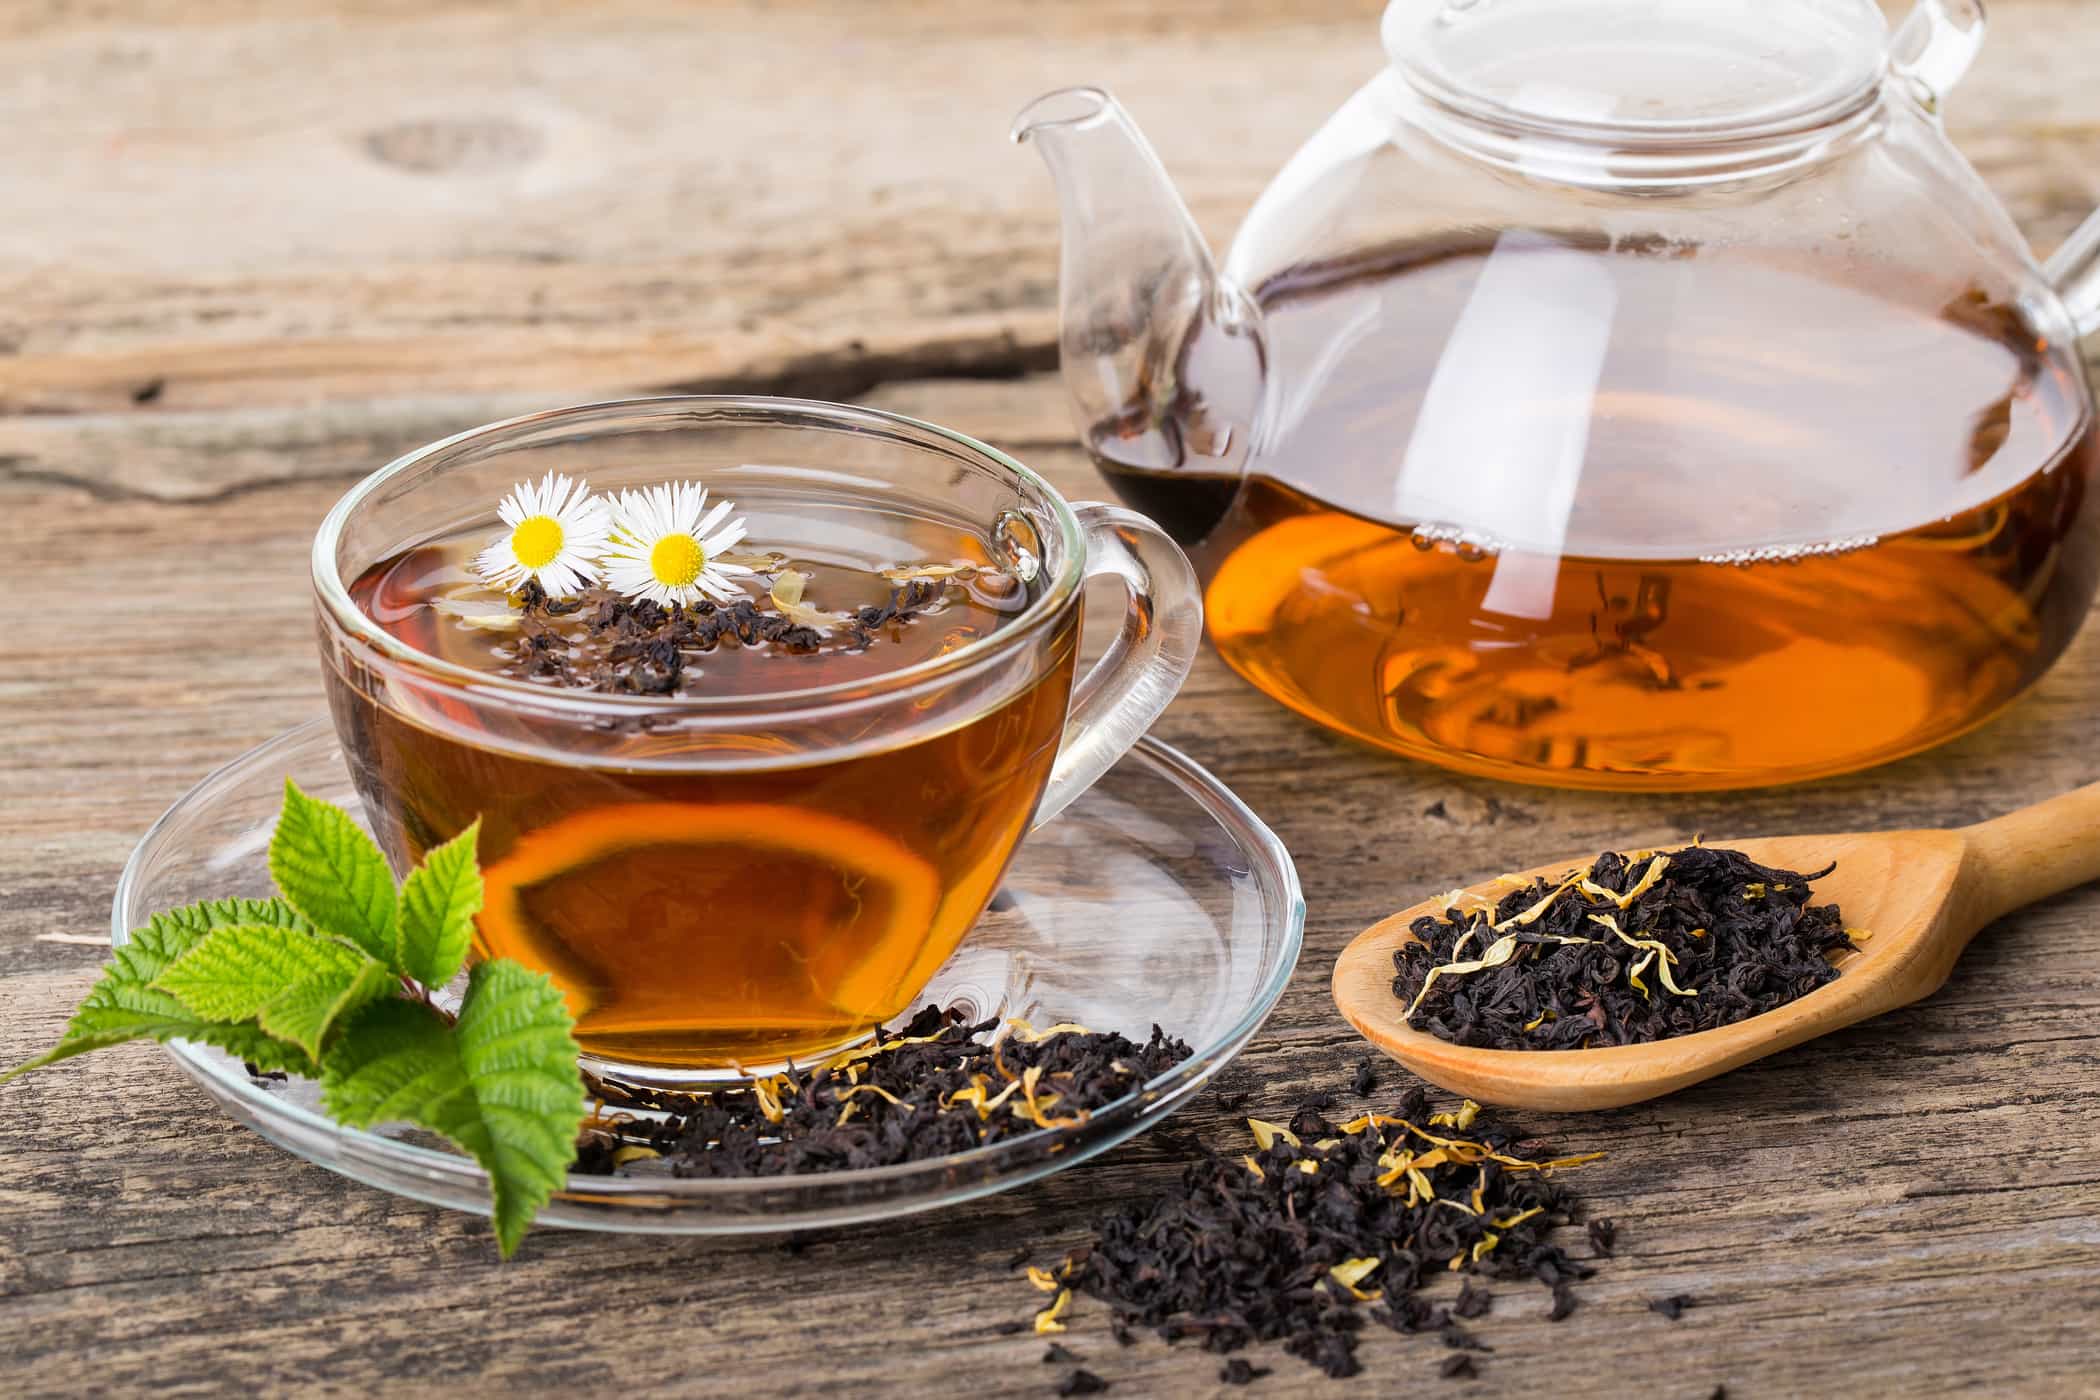 อันไหนดีต่อสุขภาพ: ชาถุงหรือชาทูบรัก?